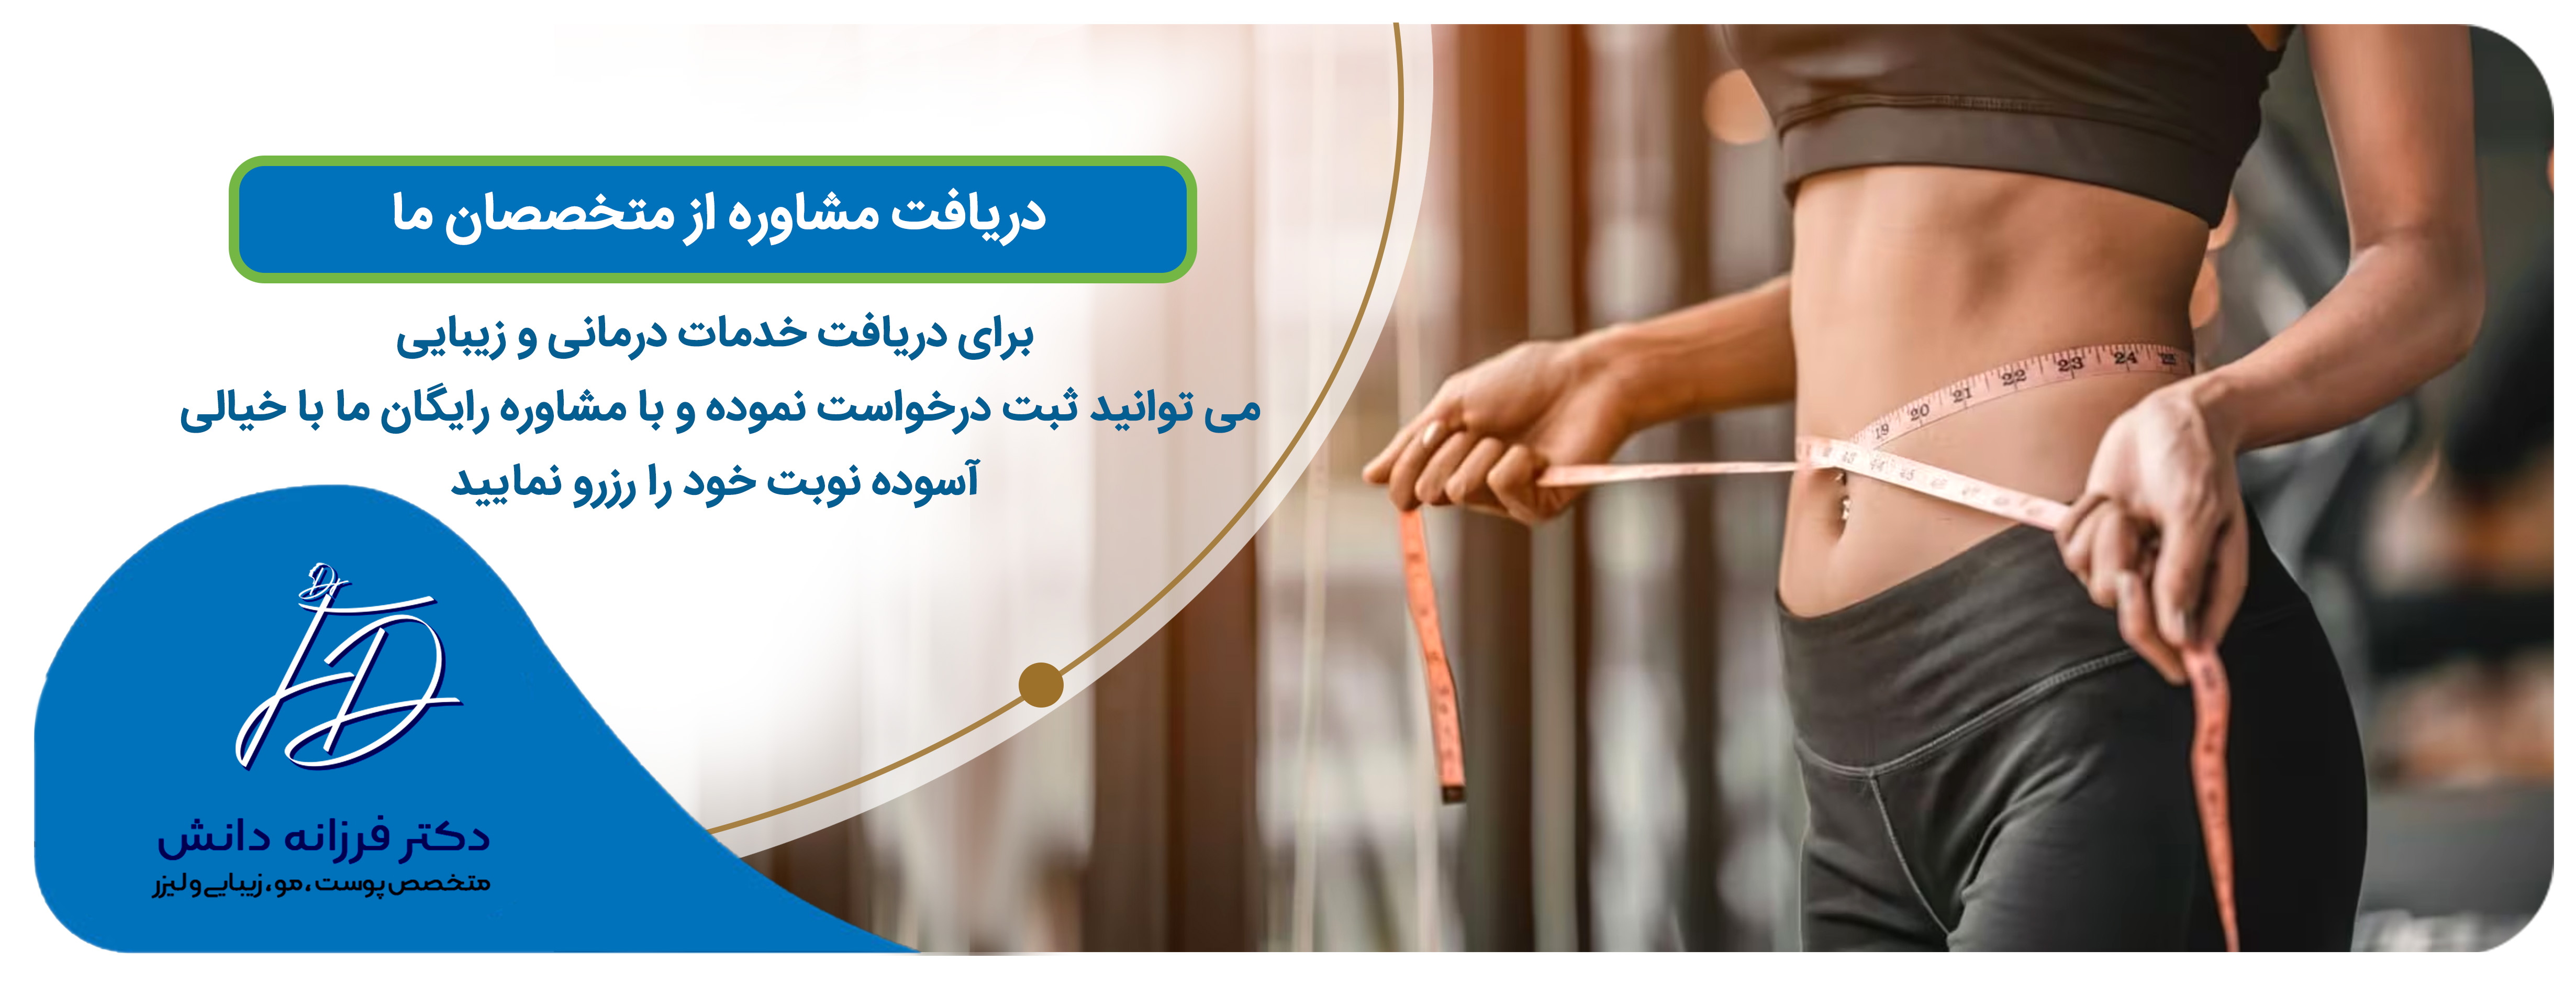 خدمات لاغری در اصفهان - کلینیک دانش